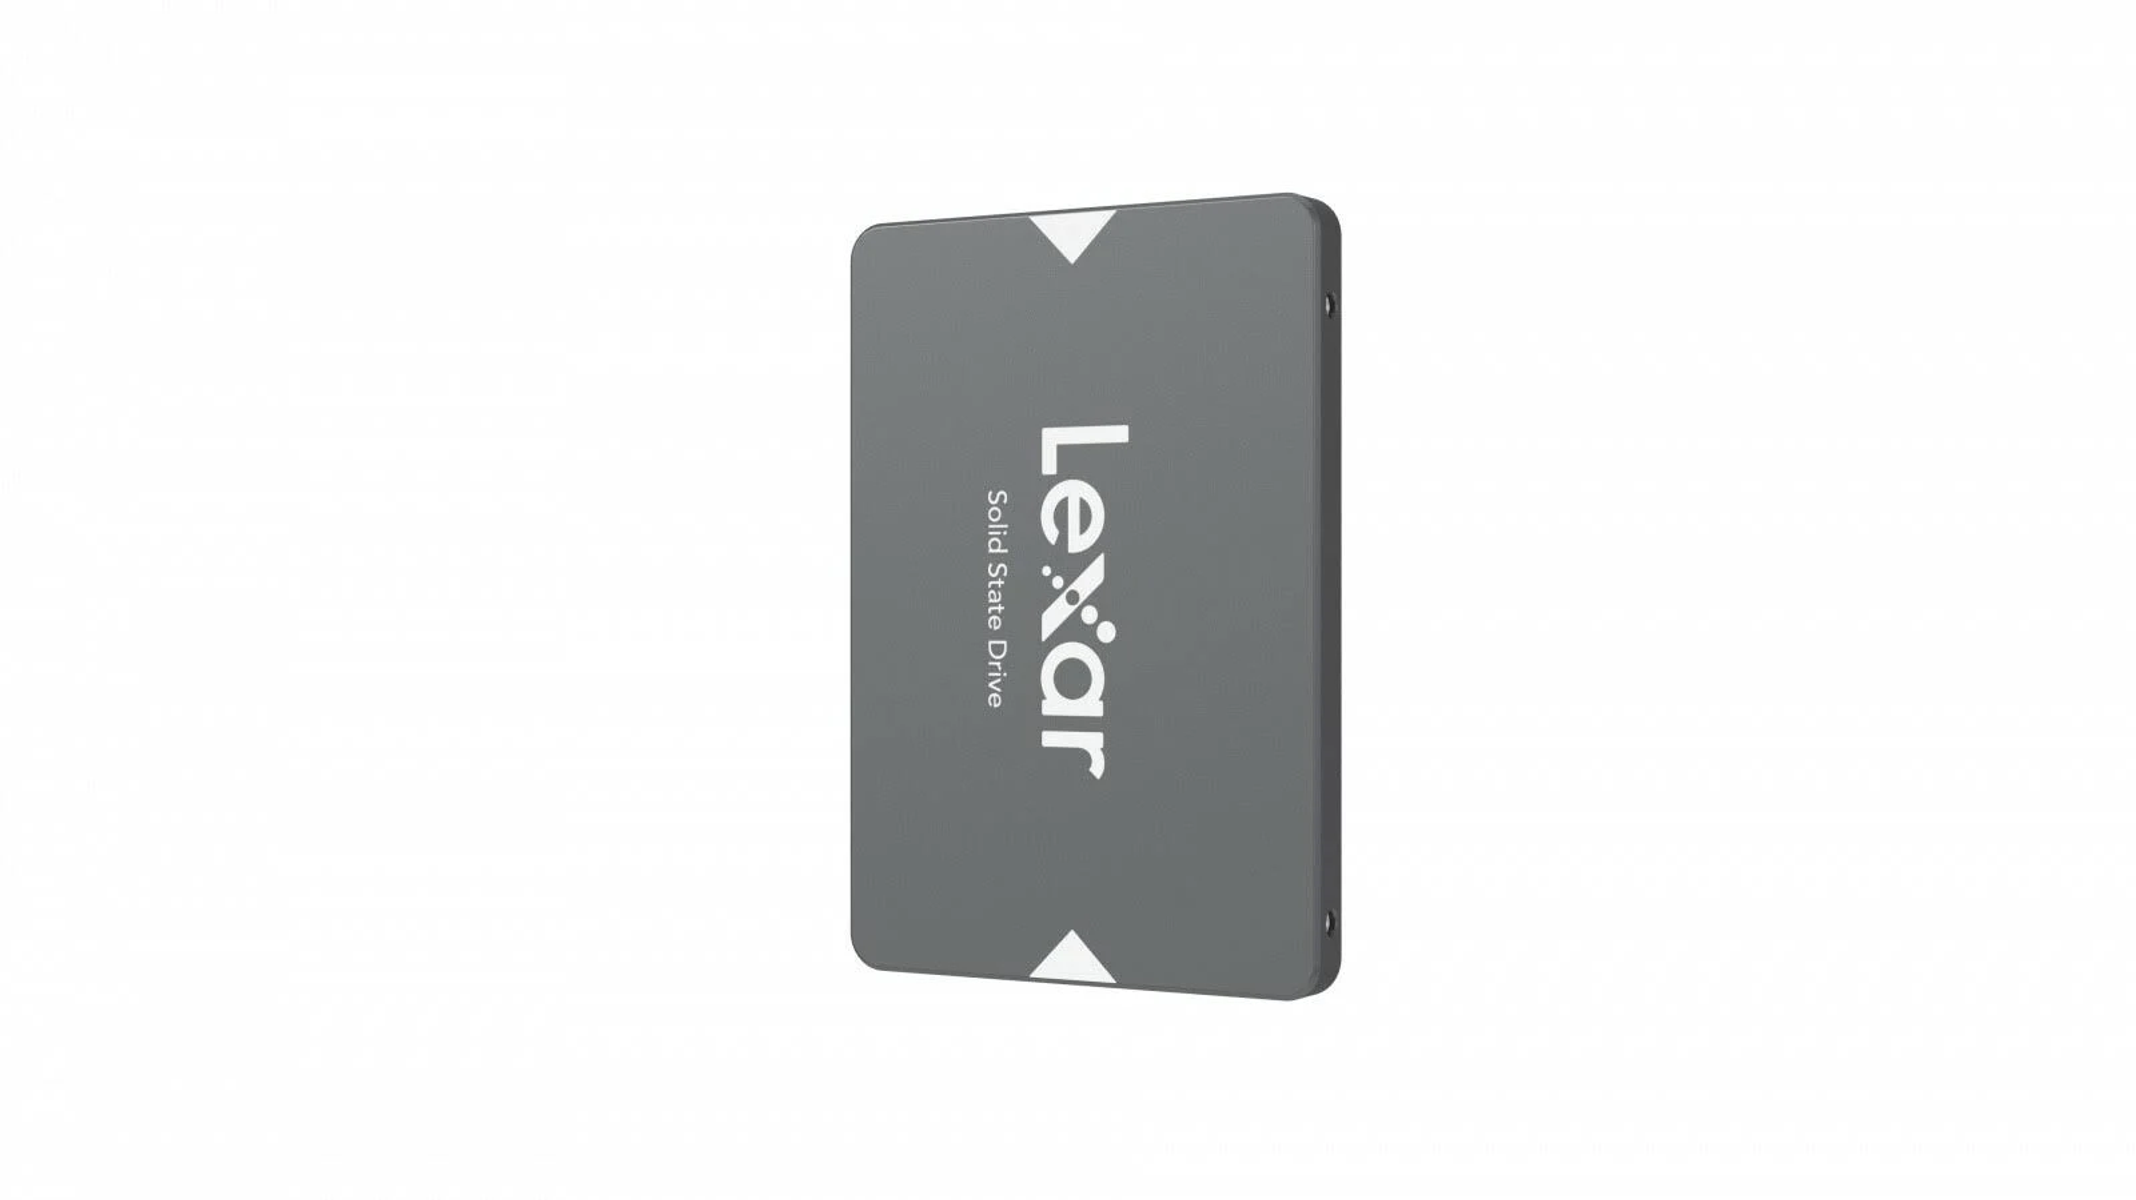 SSD, LEXAR extern, Zoll, 2,5 TB 2 LNS100-2TRB, Silber